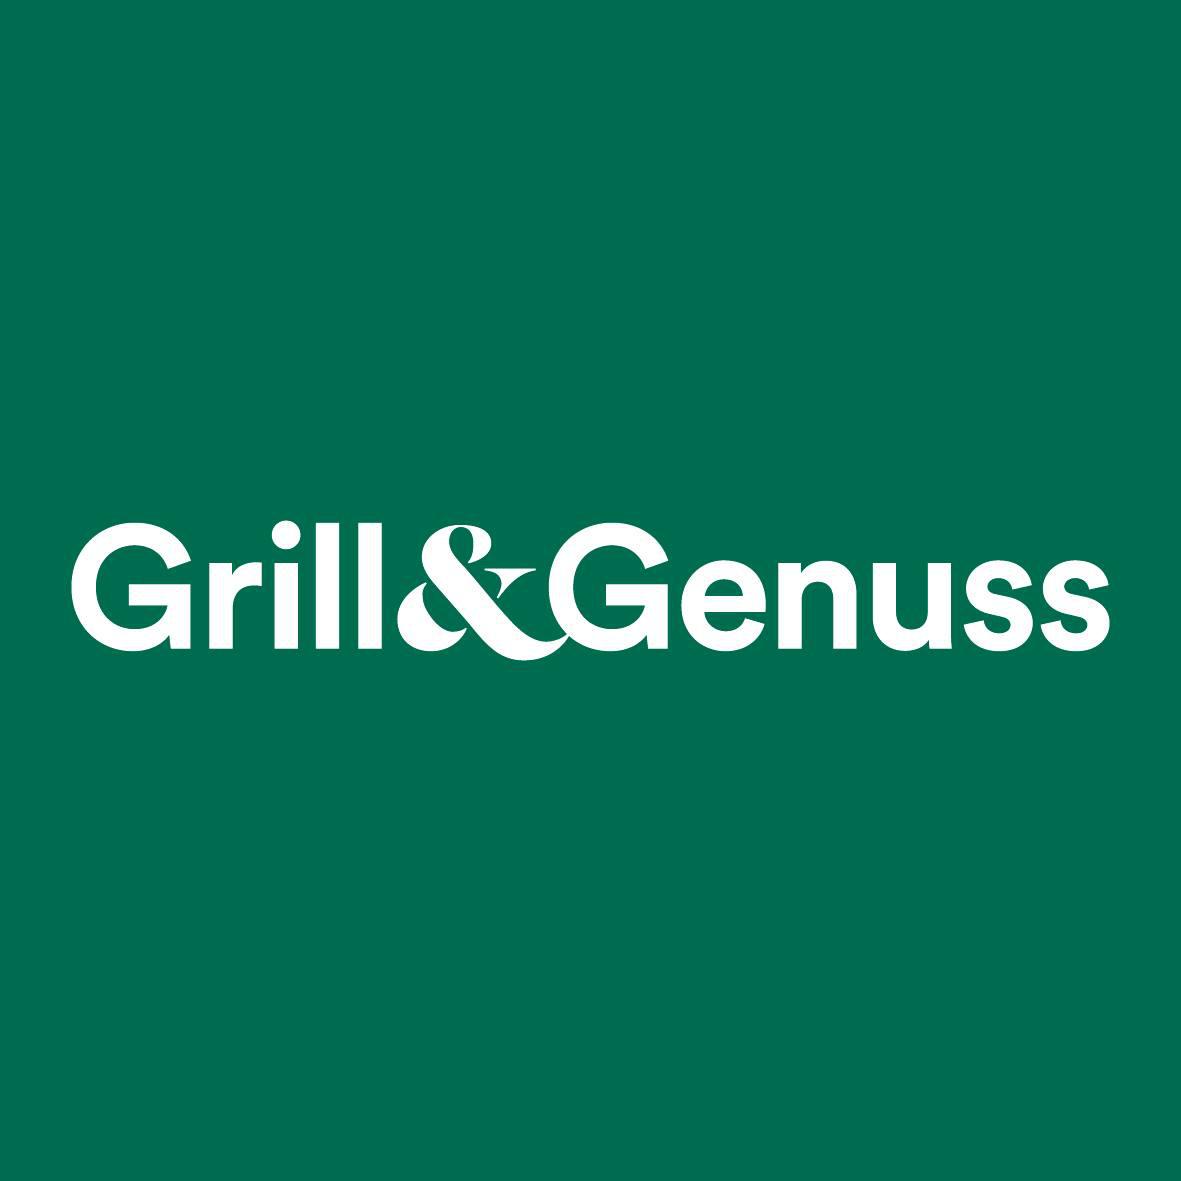 RS Grill&Genuss / Grillakademie Potsdam